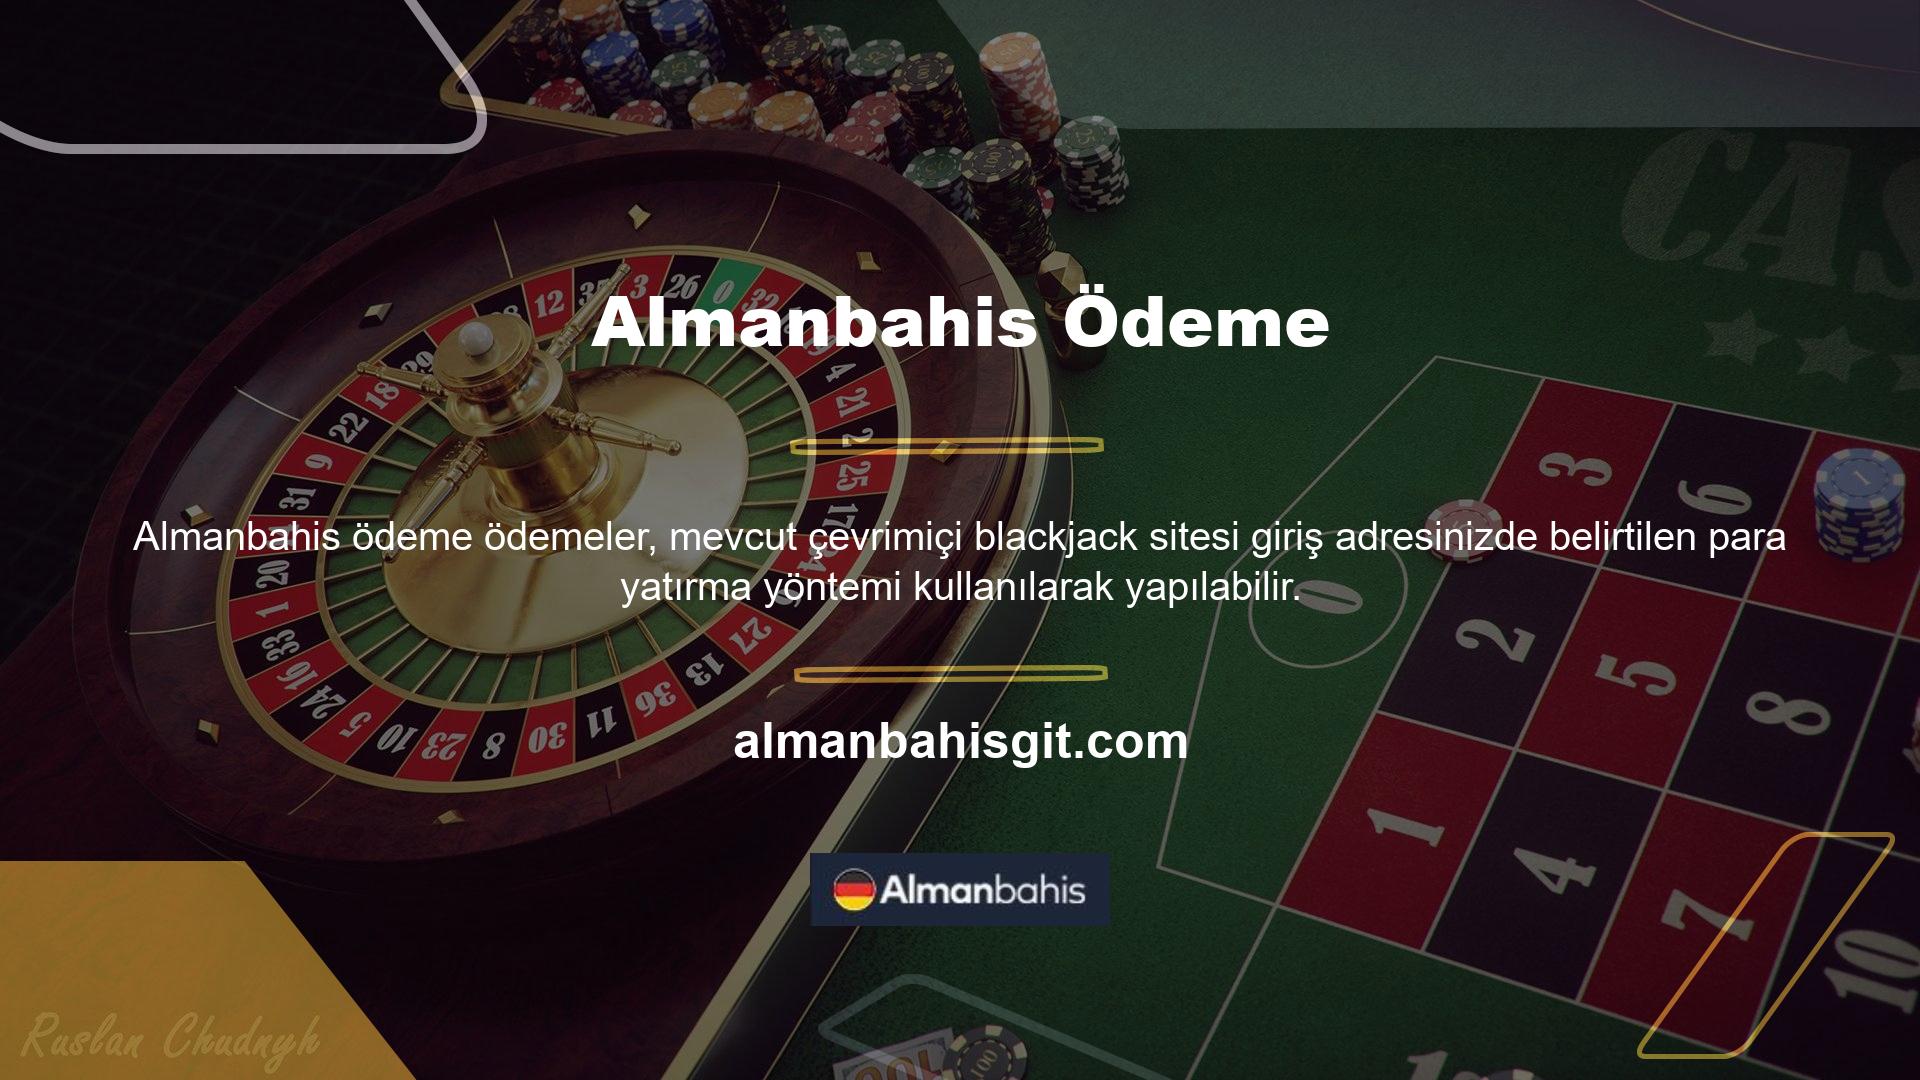 Blackjack, poker, rulet ve diğer bahisleri oynamak için Almanbahis sitesine üye olabilirsiniz